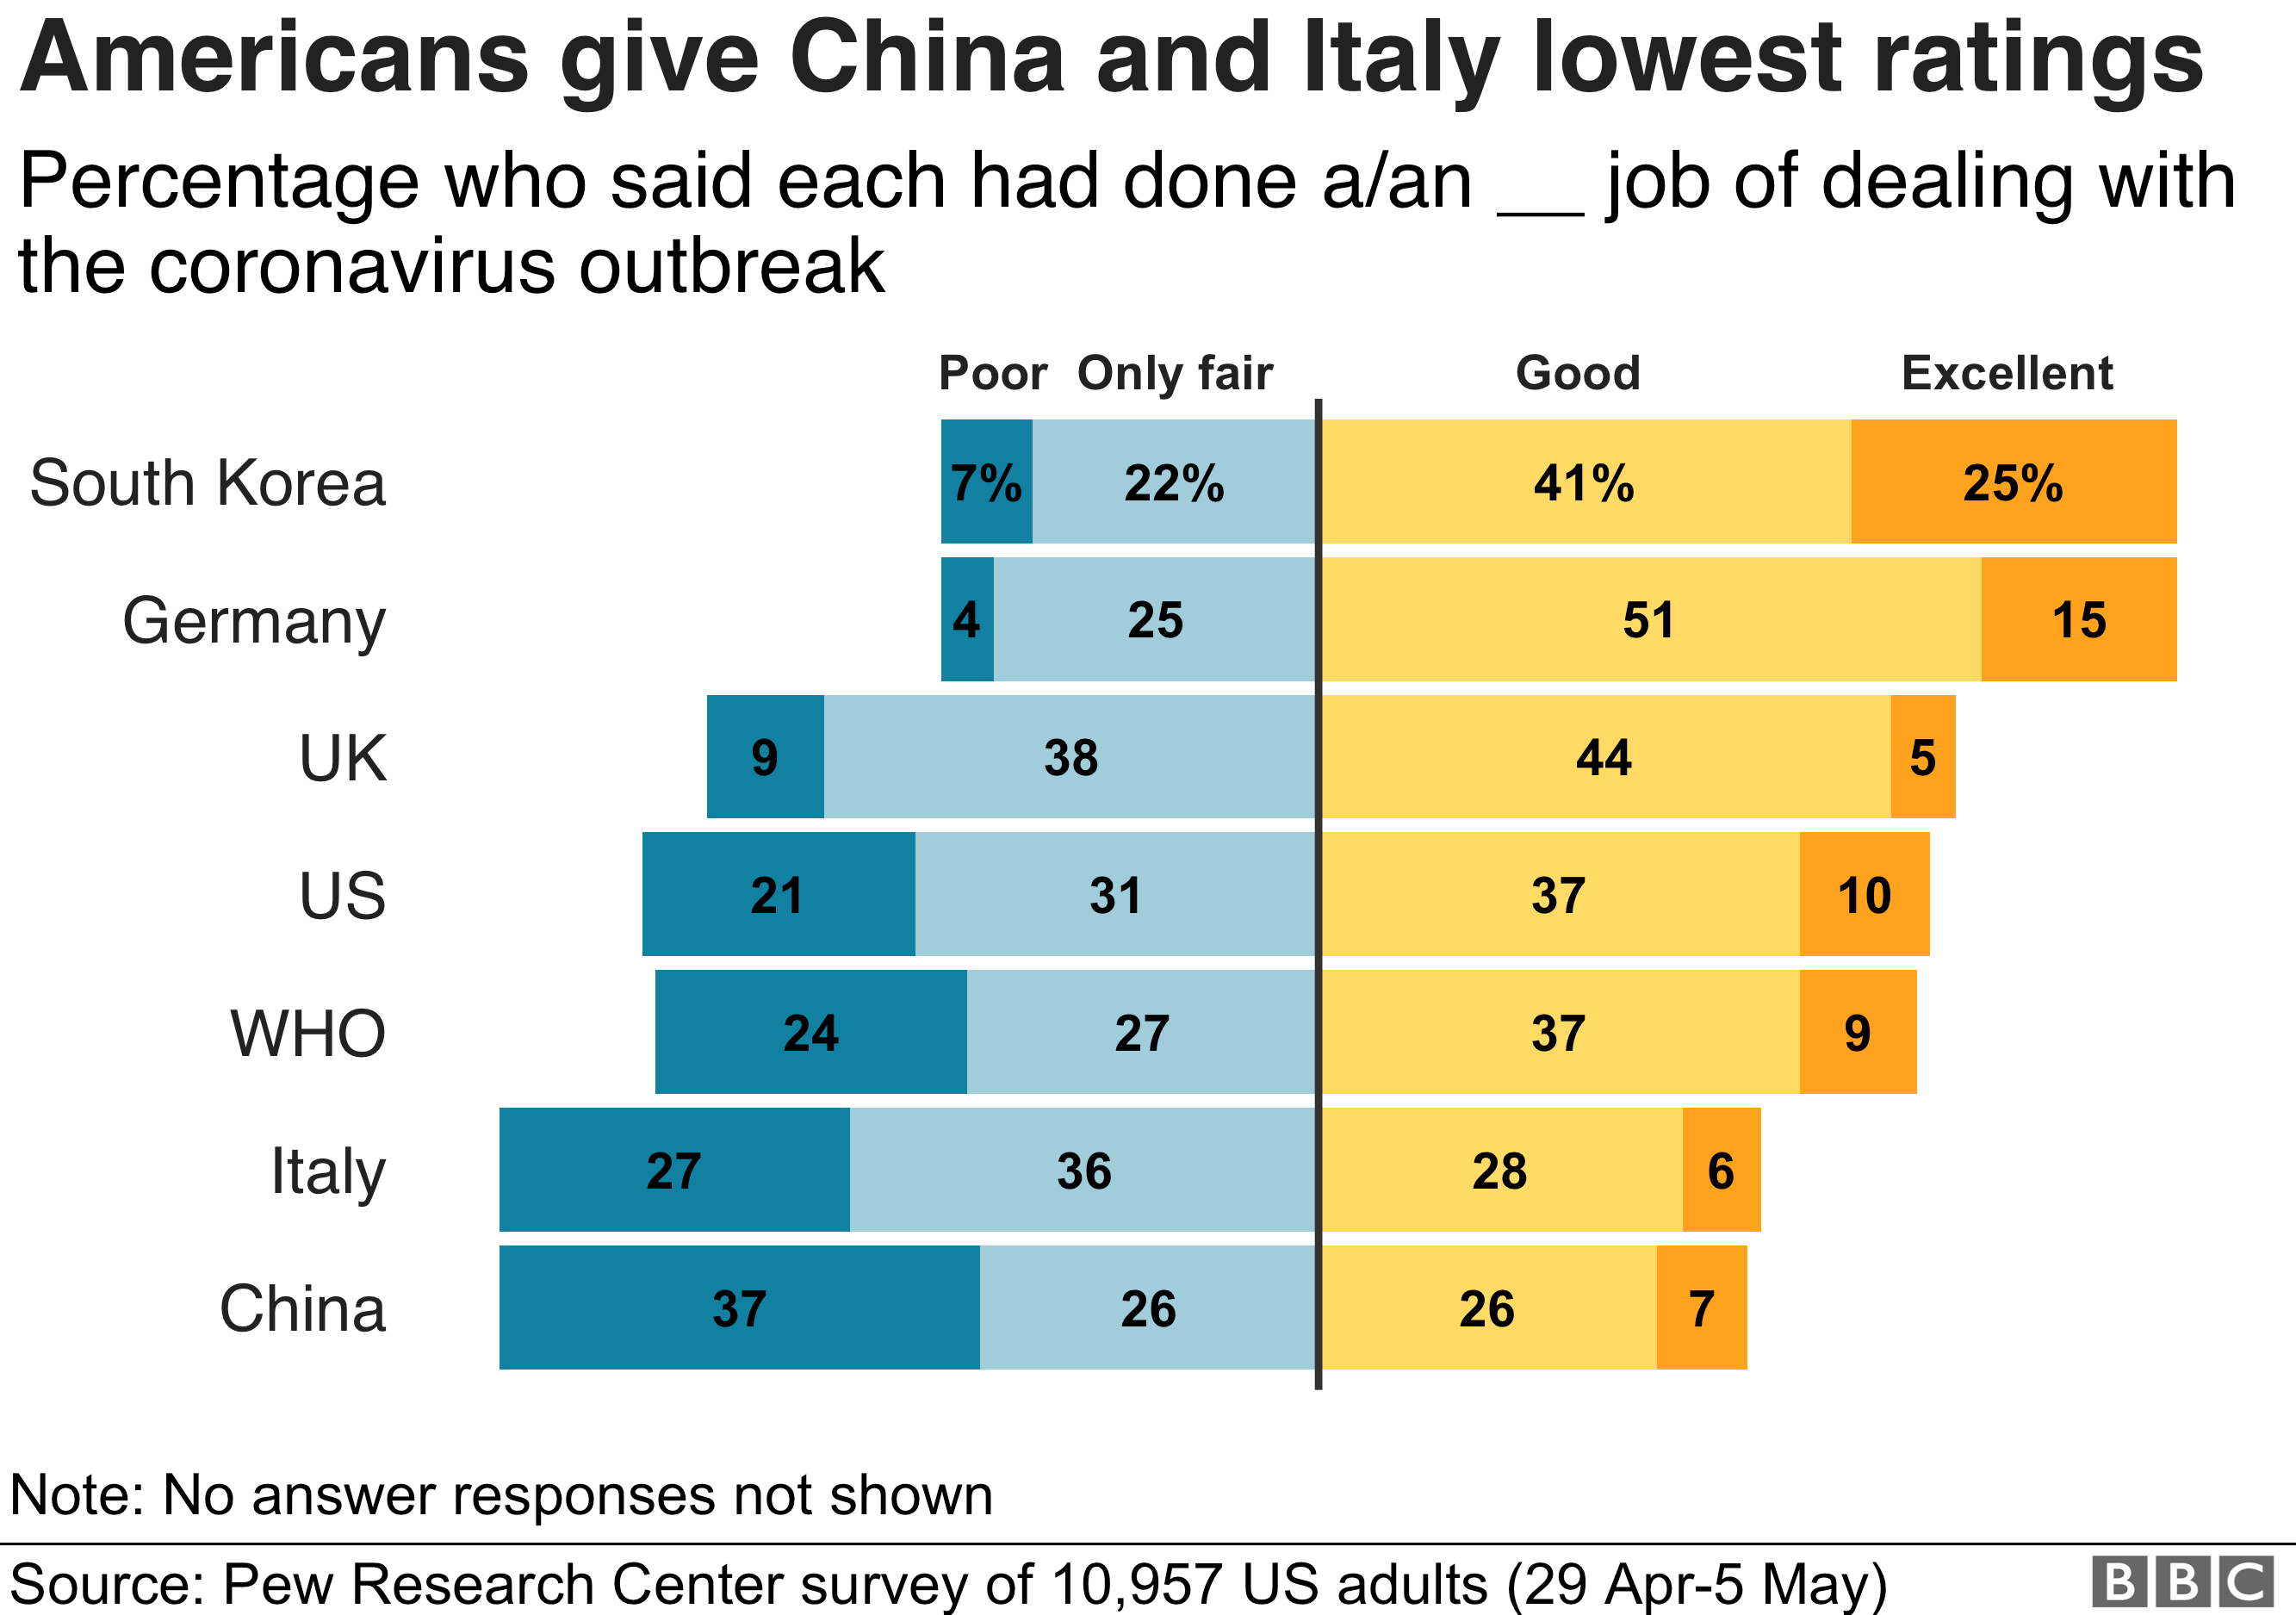 График, показывающий, что американцы ставят Южную Корею и Германию наивысшими оценками по ответу на Covid-19, а Италия и Китай - самыми низкими